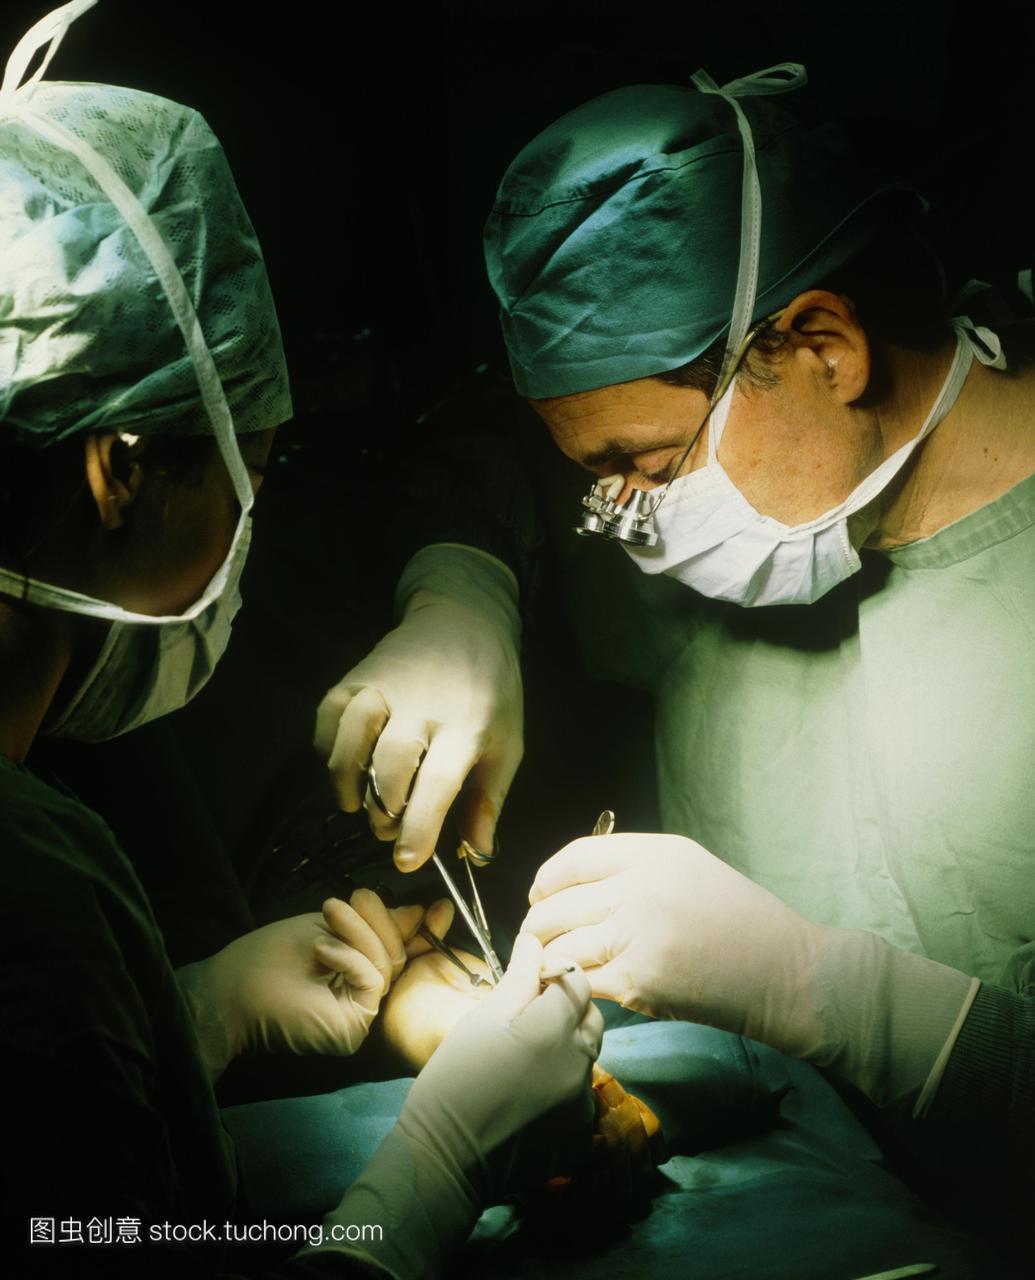 腕管综合症手术。外科医生在病人的手臂上操作